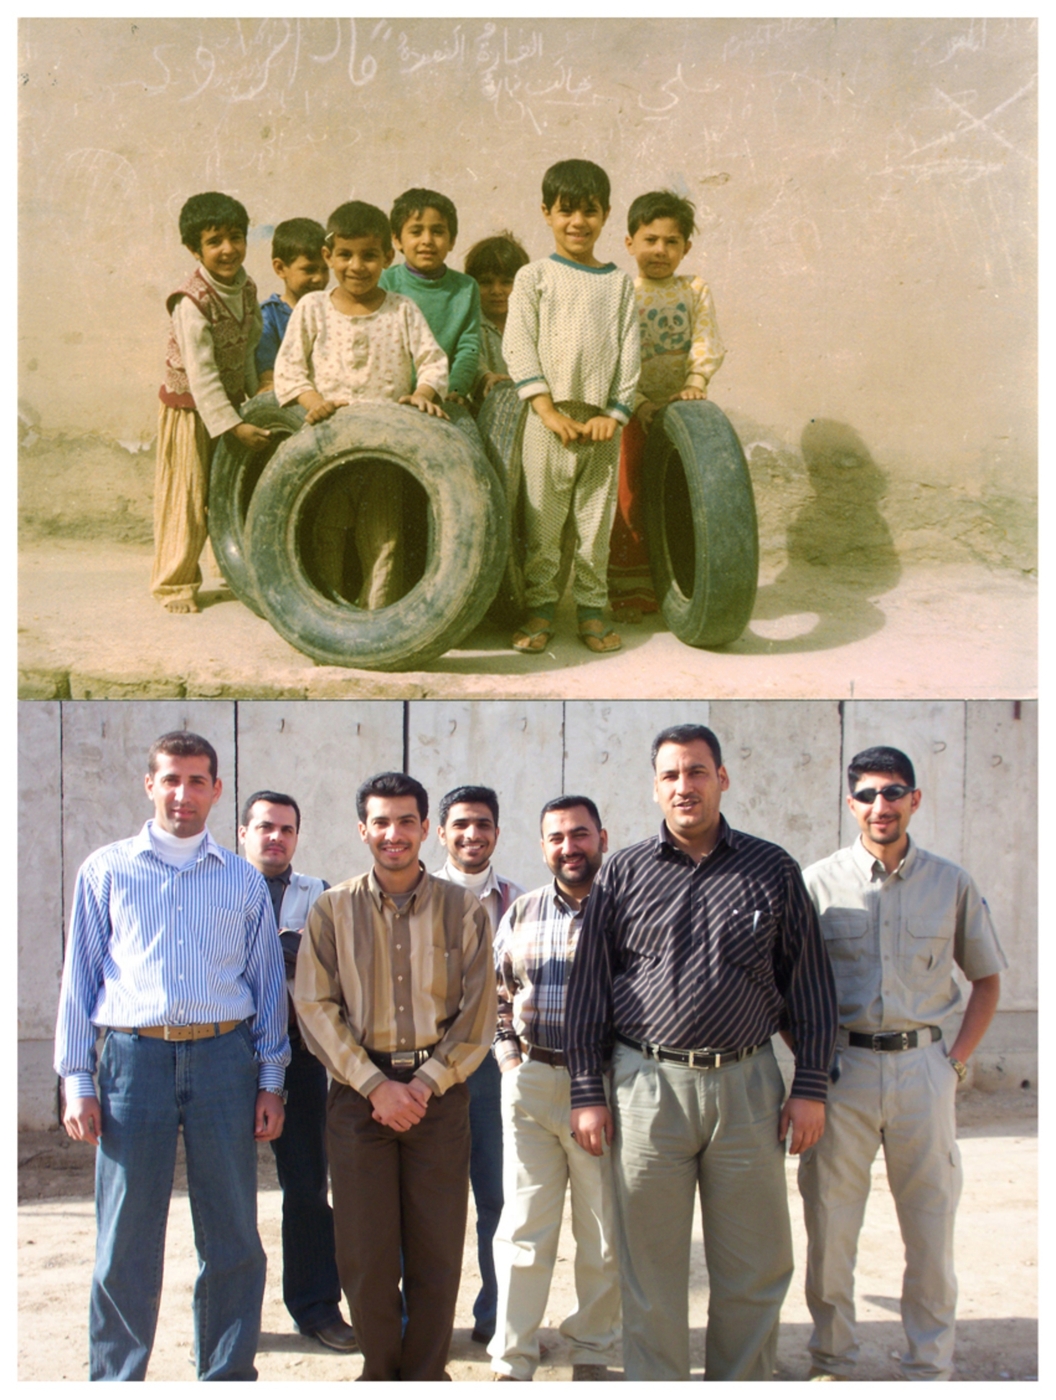 Generazioni, Questa foto con i bambini è stata scattata a Kut City, Iraq, nell'estate del 1979. 

Nel 2006 ho chiesto a mio fratello Ahmed di fare lo stesso. Certo, non è stato possibile ritrovare gli stessi bambini, quindi ha scattato la foto con i suoi amici. Paradosso e ironia del tempo in un Paese che non conosce pace.